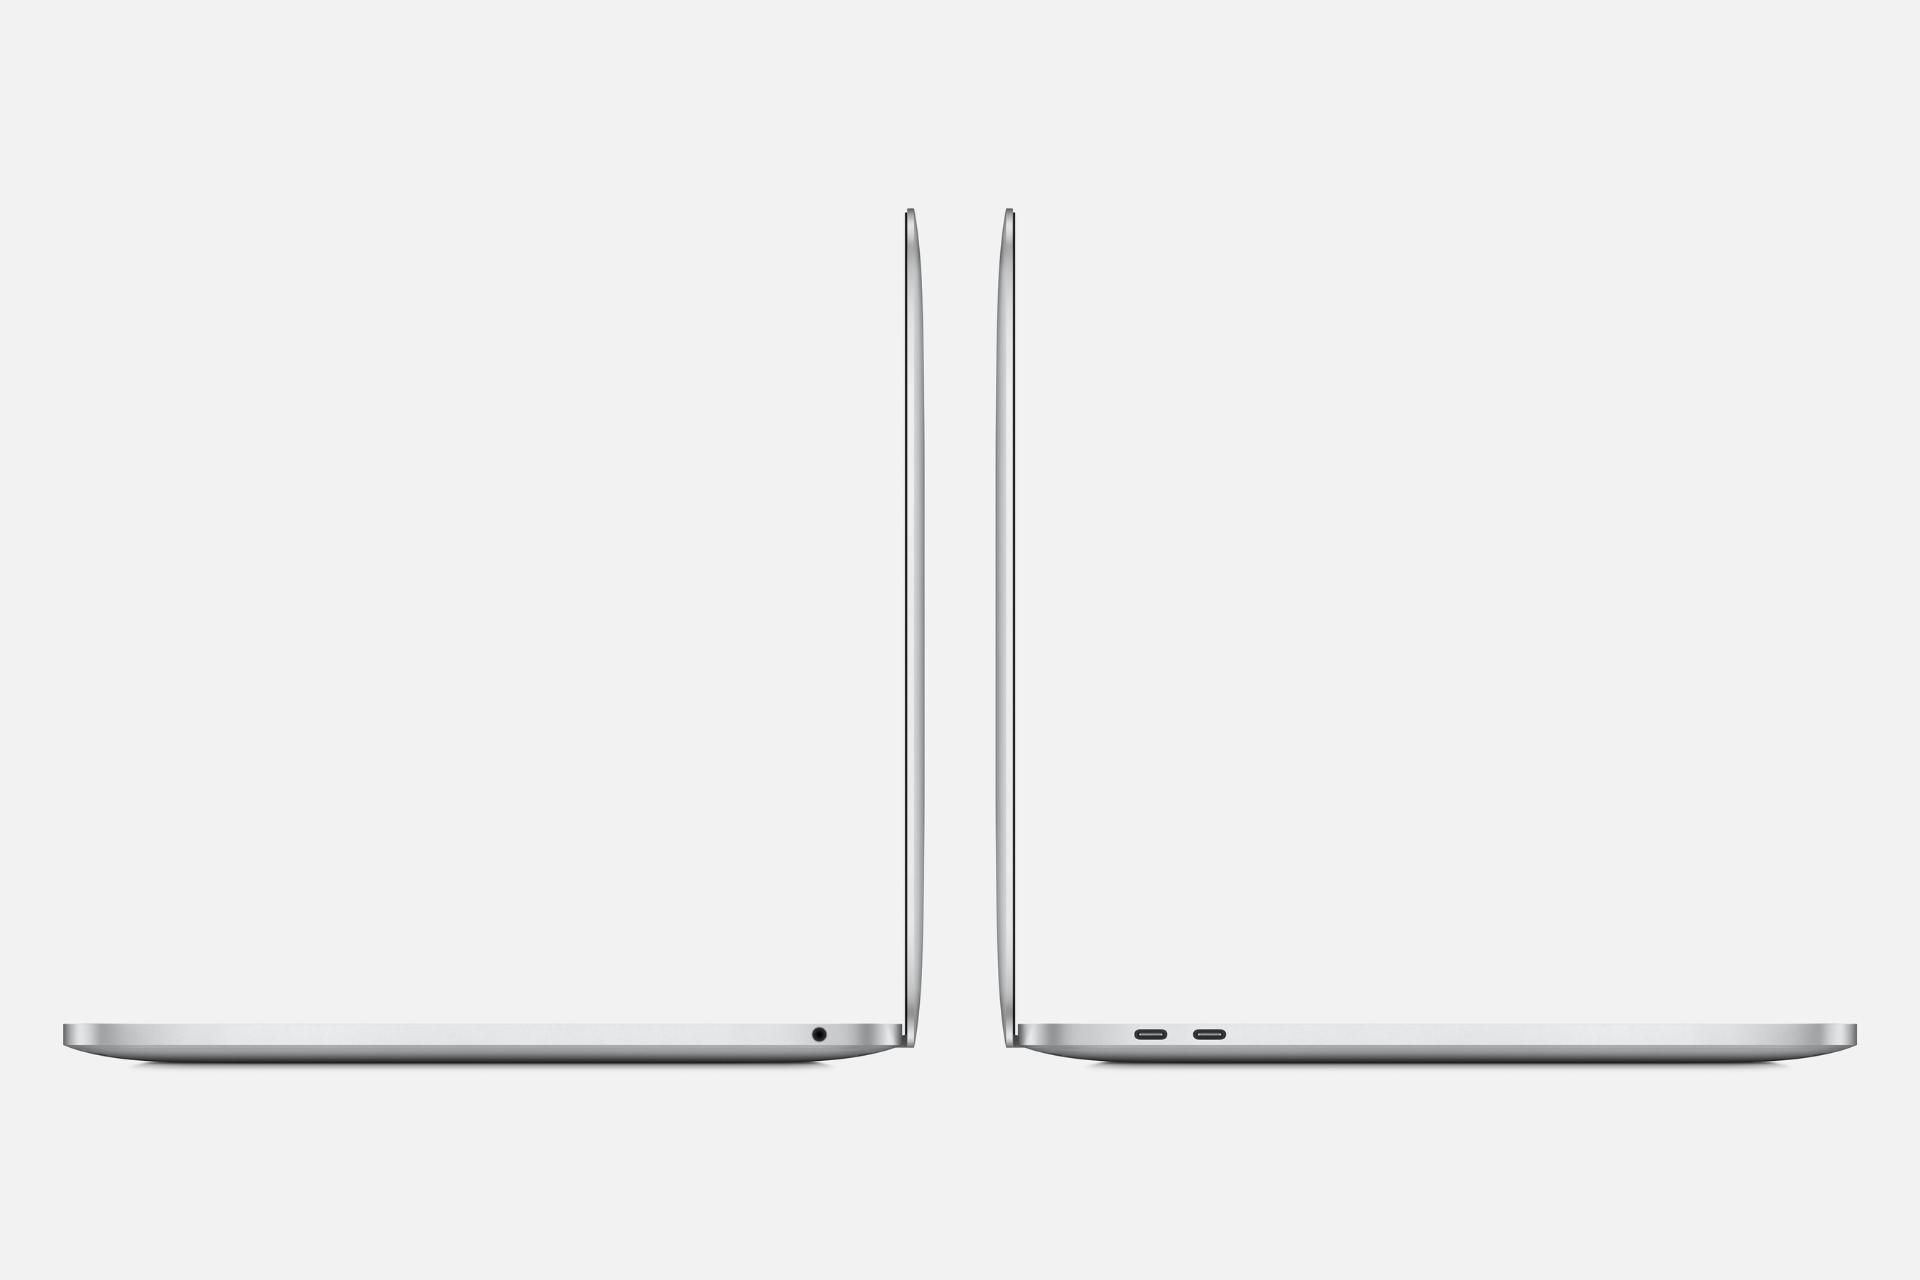 نمای جانبی مک بوک پرو ام 2 اپل / Apple MacBook Pro M2 نقره ای